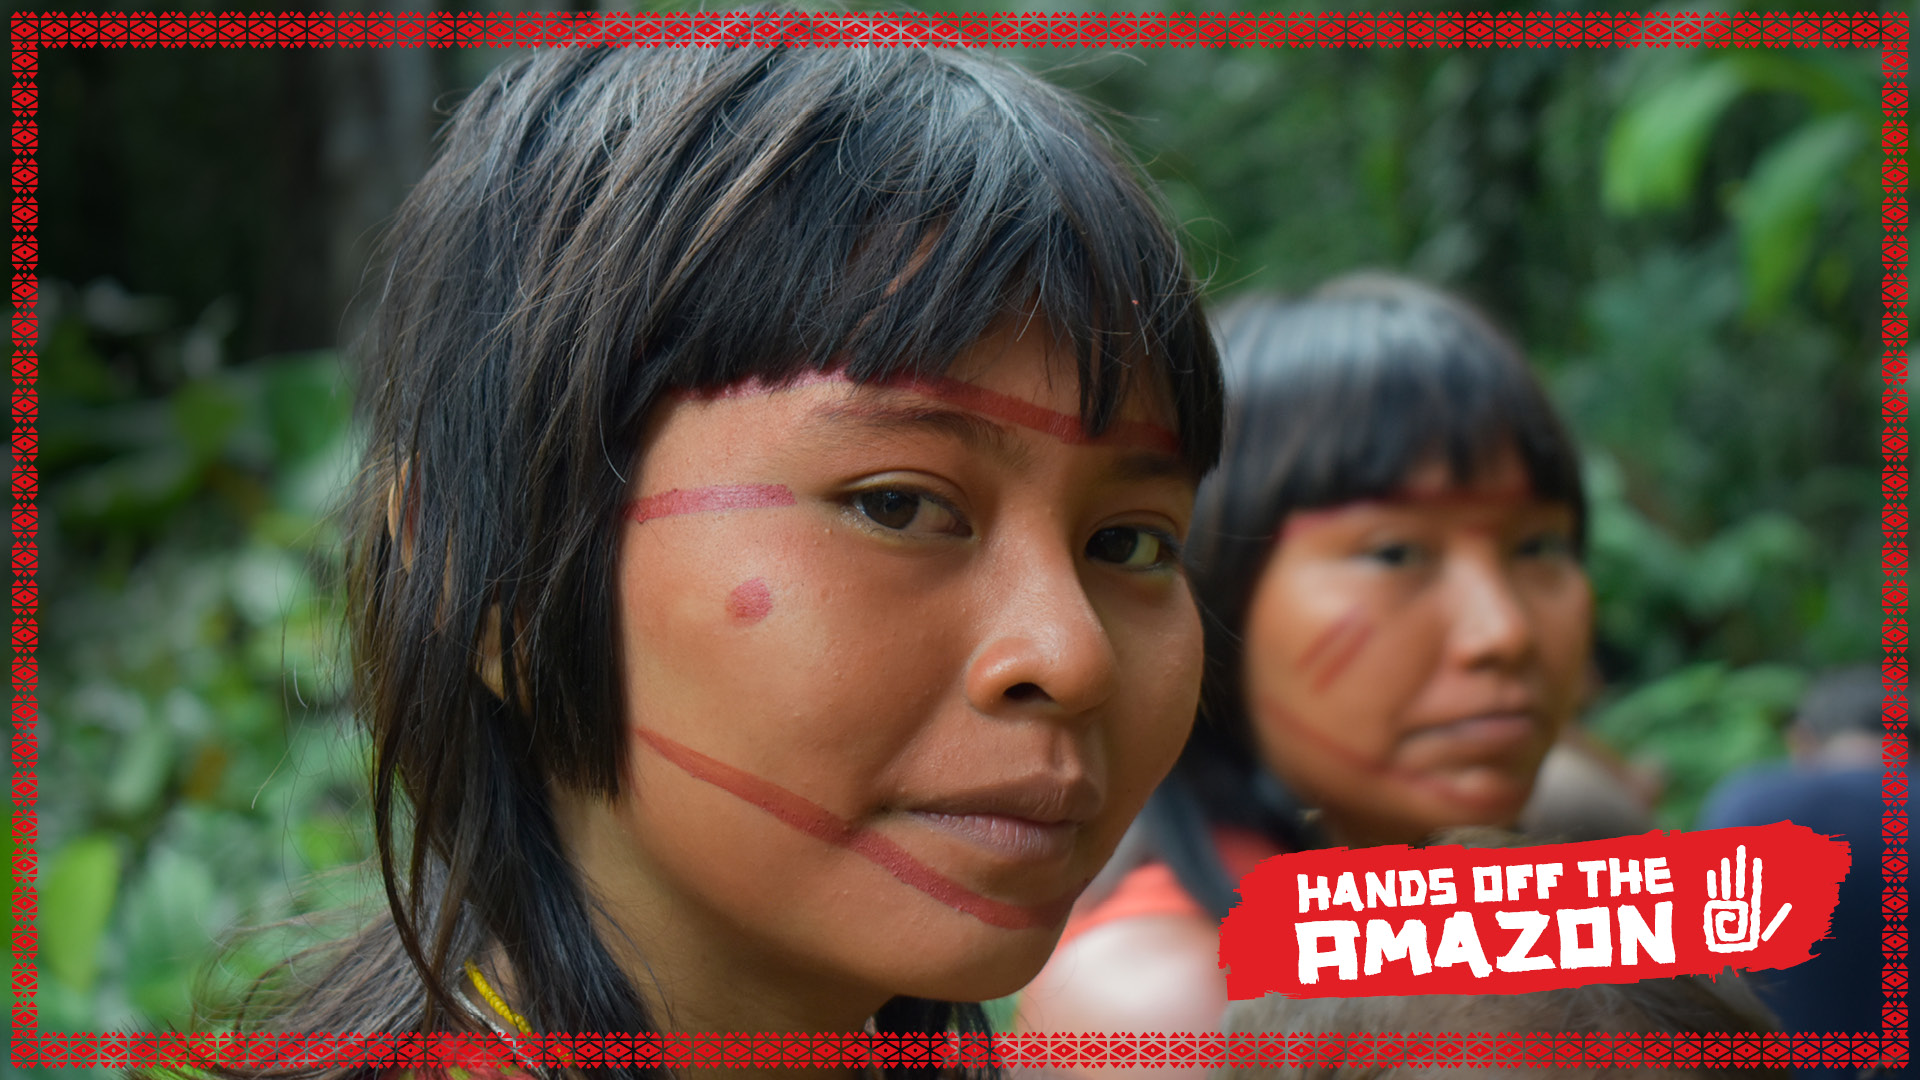 Brasil - indigenous women from the Amazon region